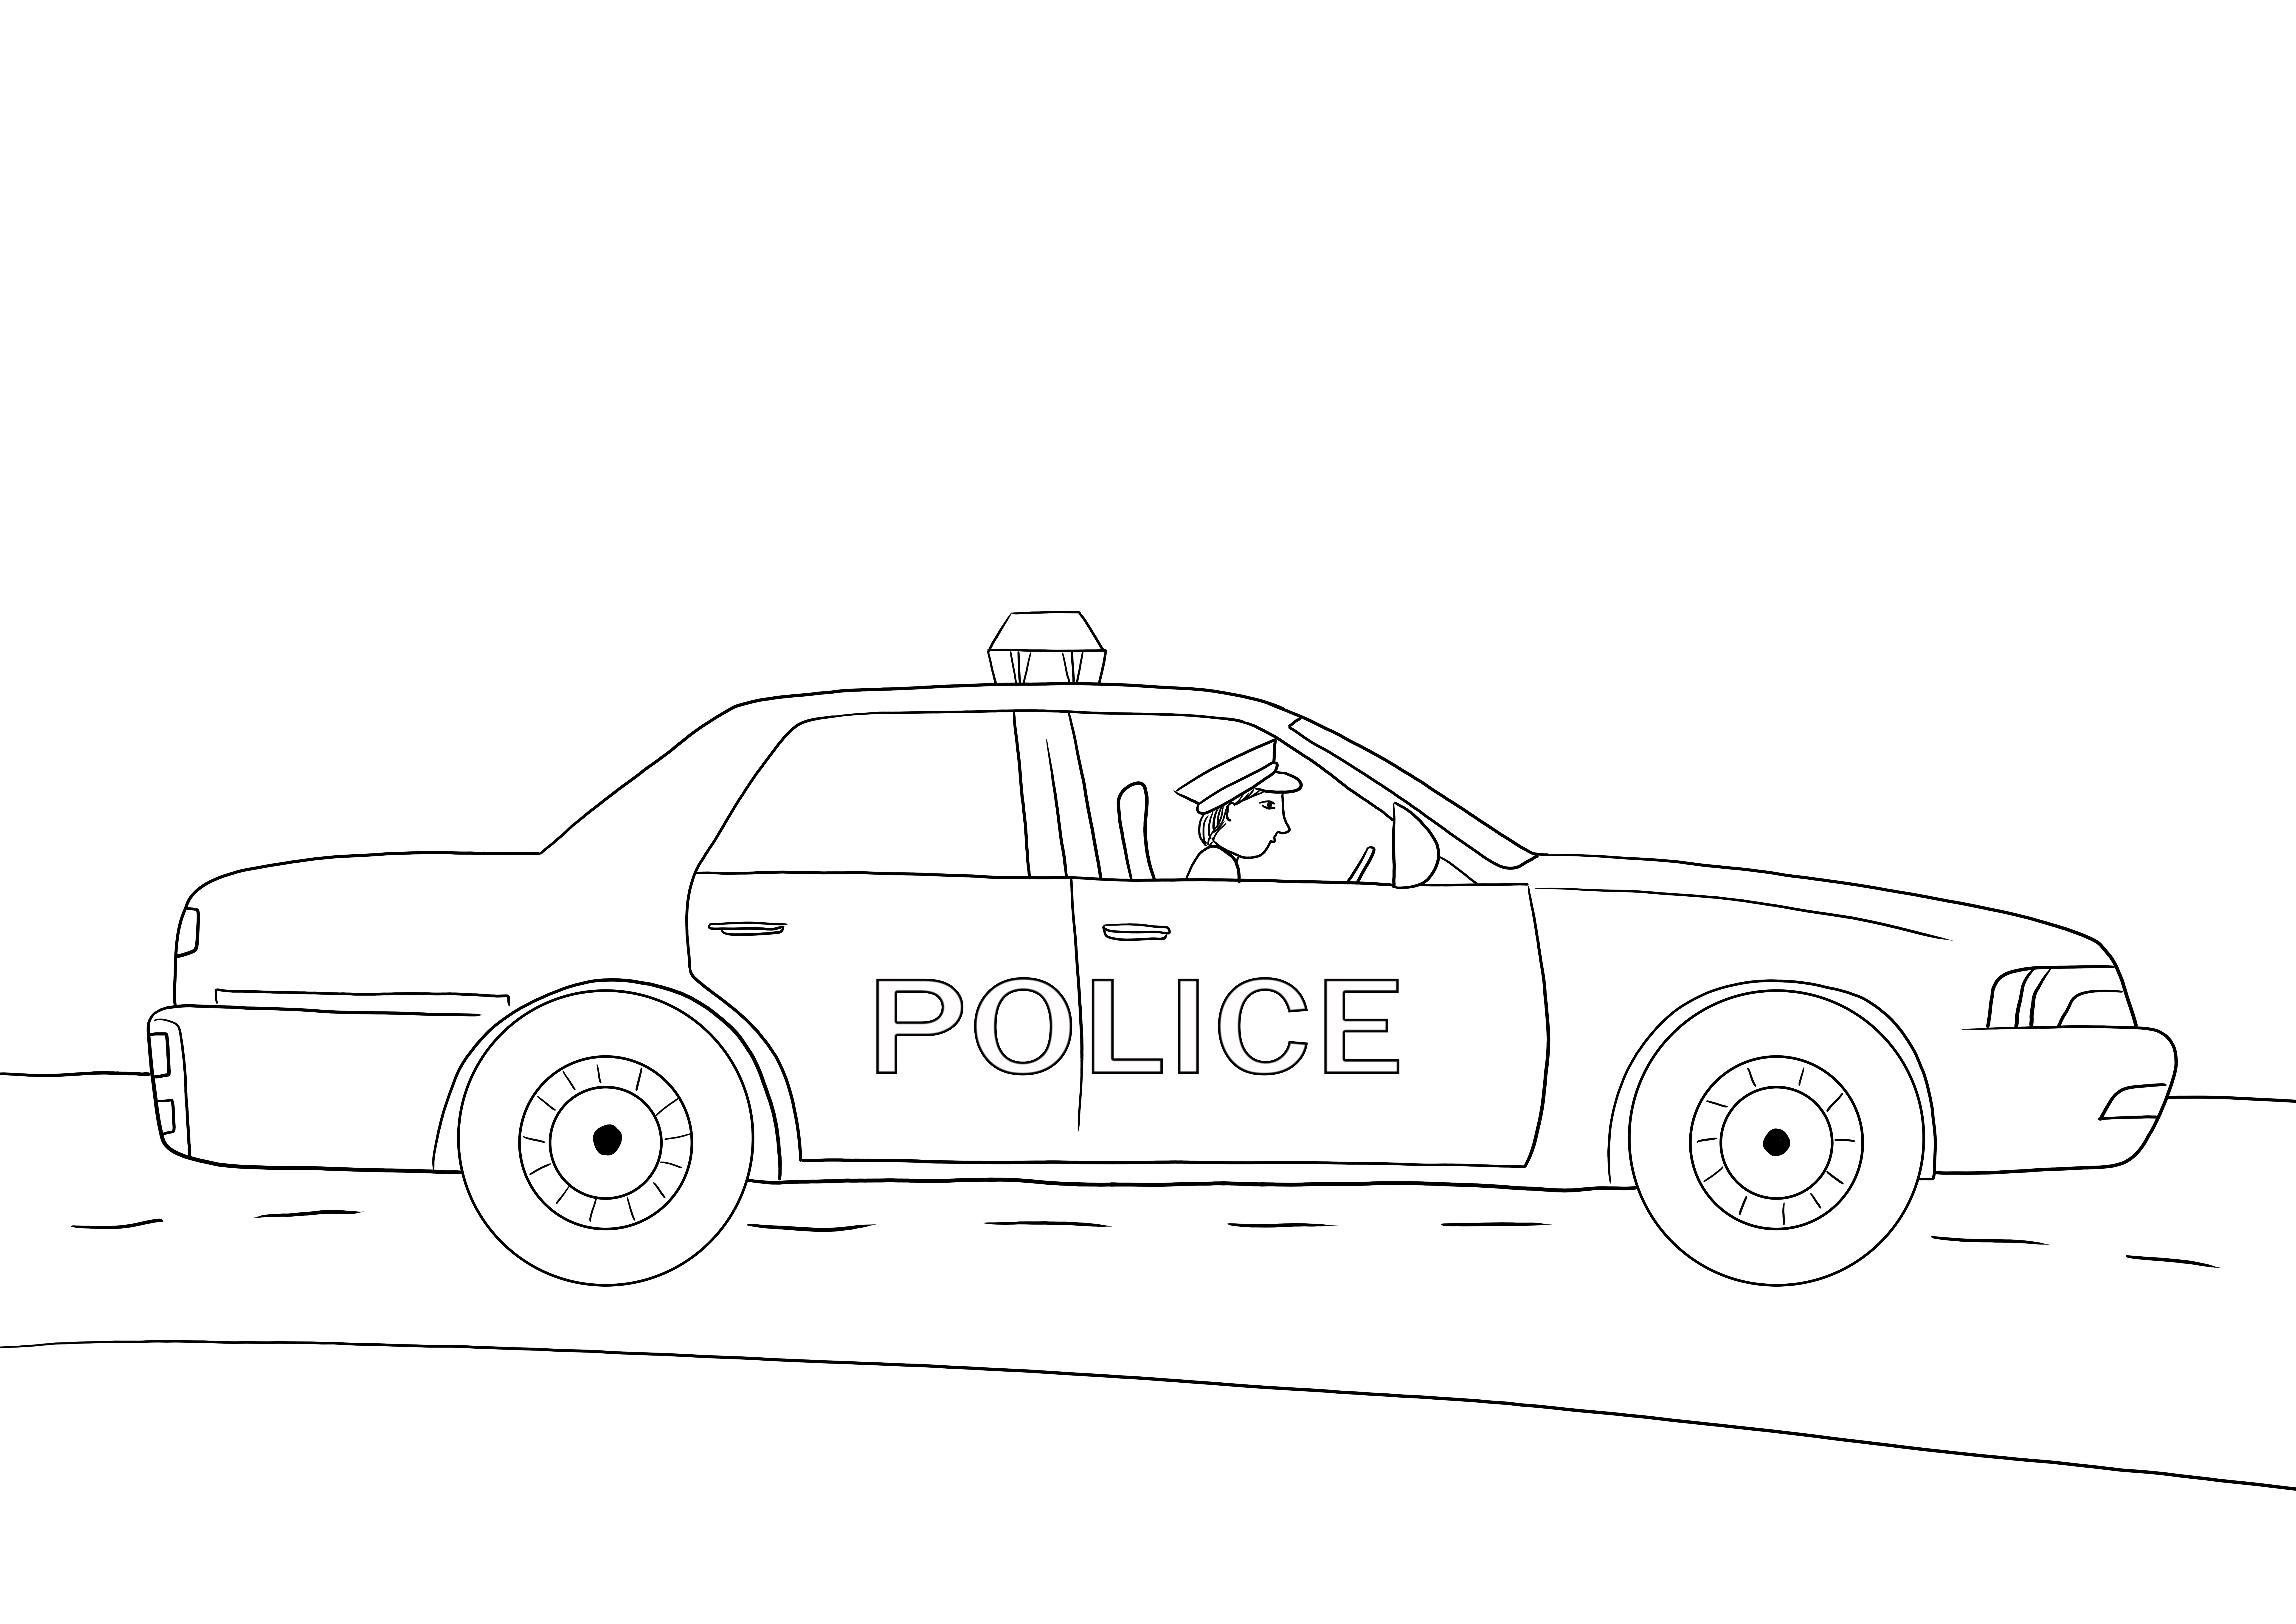 Pencetakan mobil polisi gratis untuk semua pecinta mobil ke lembar warna